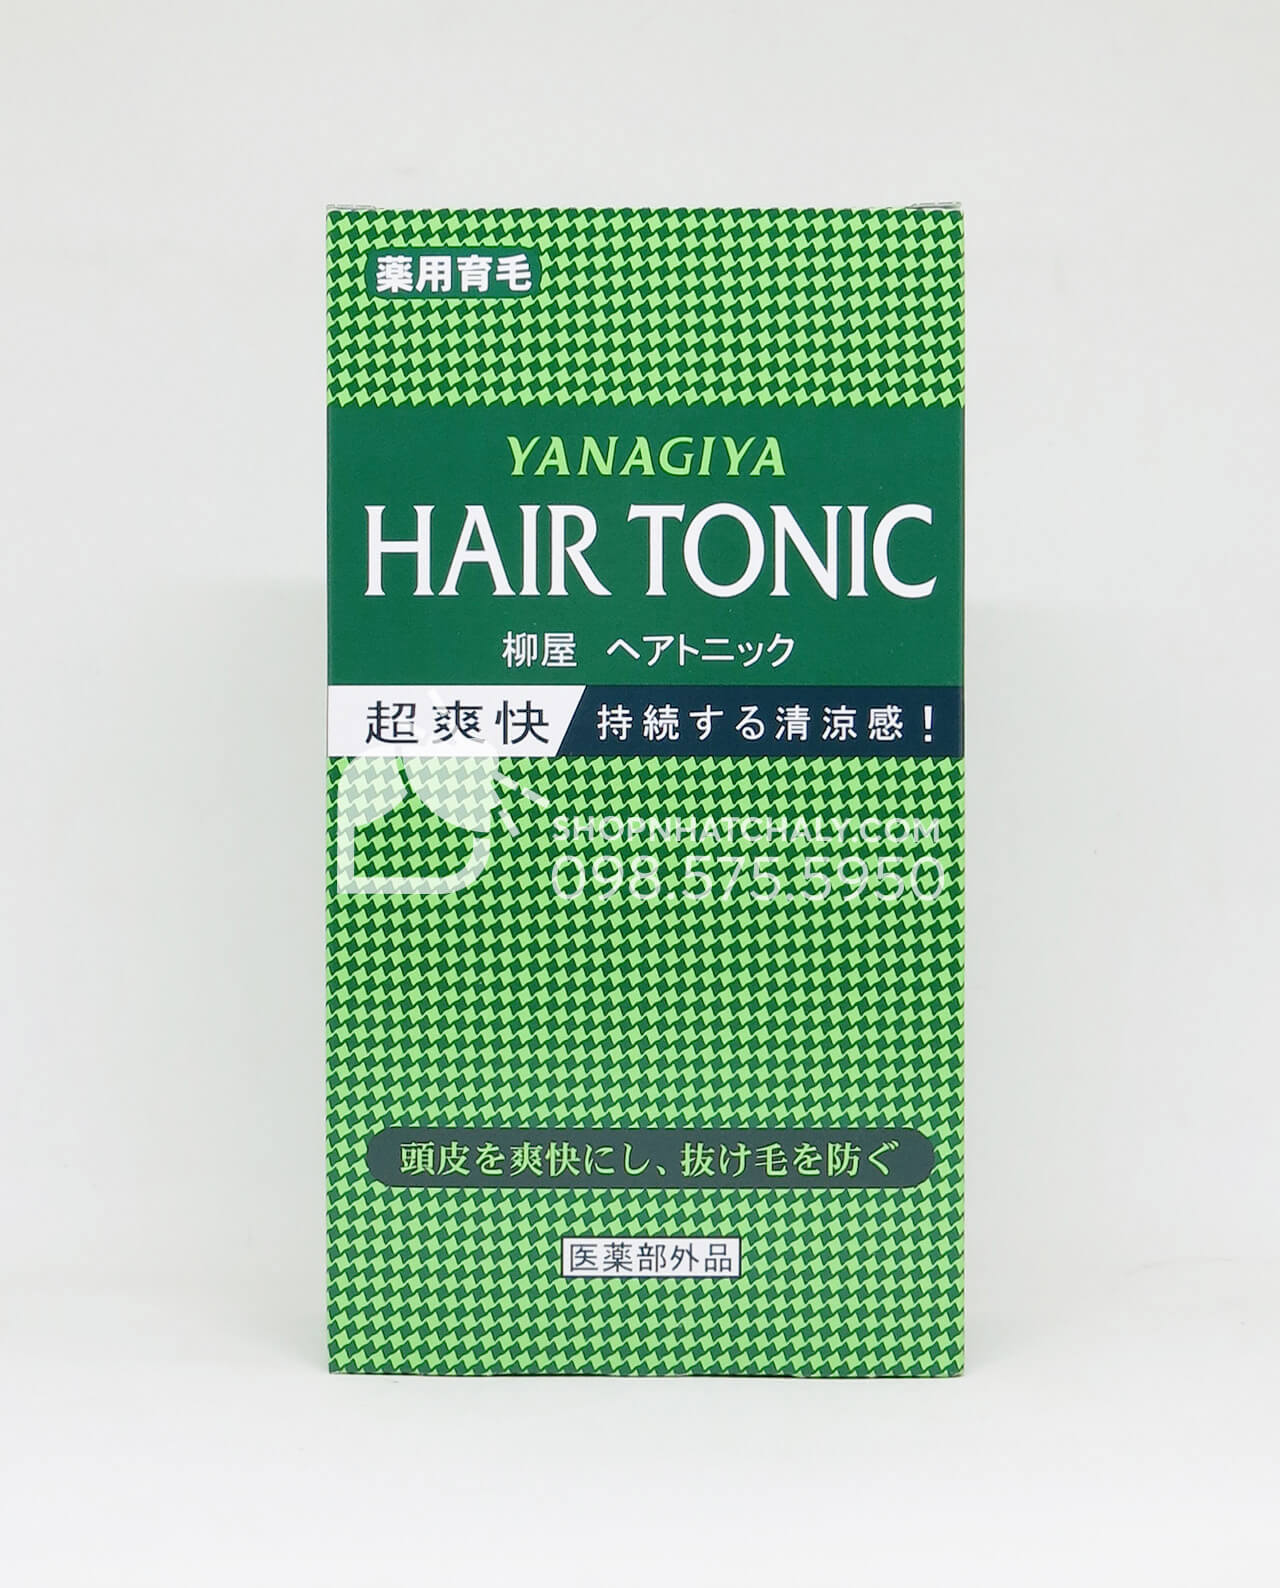 Thuốc chống rụng tóc và kích thích mọc tóc trị hói Nhật Bản Hair Tonic Yanagiya 360ml